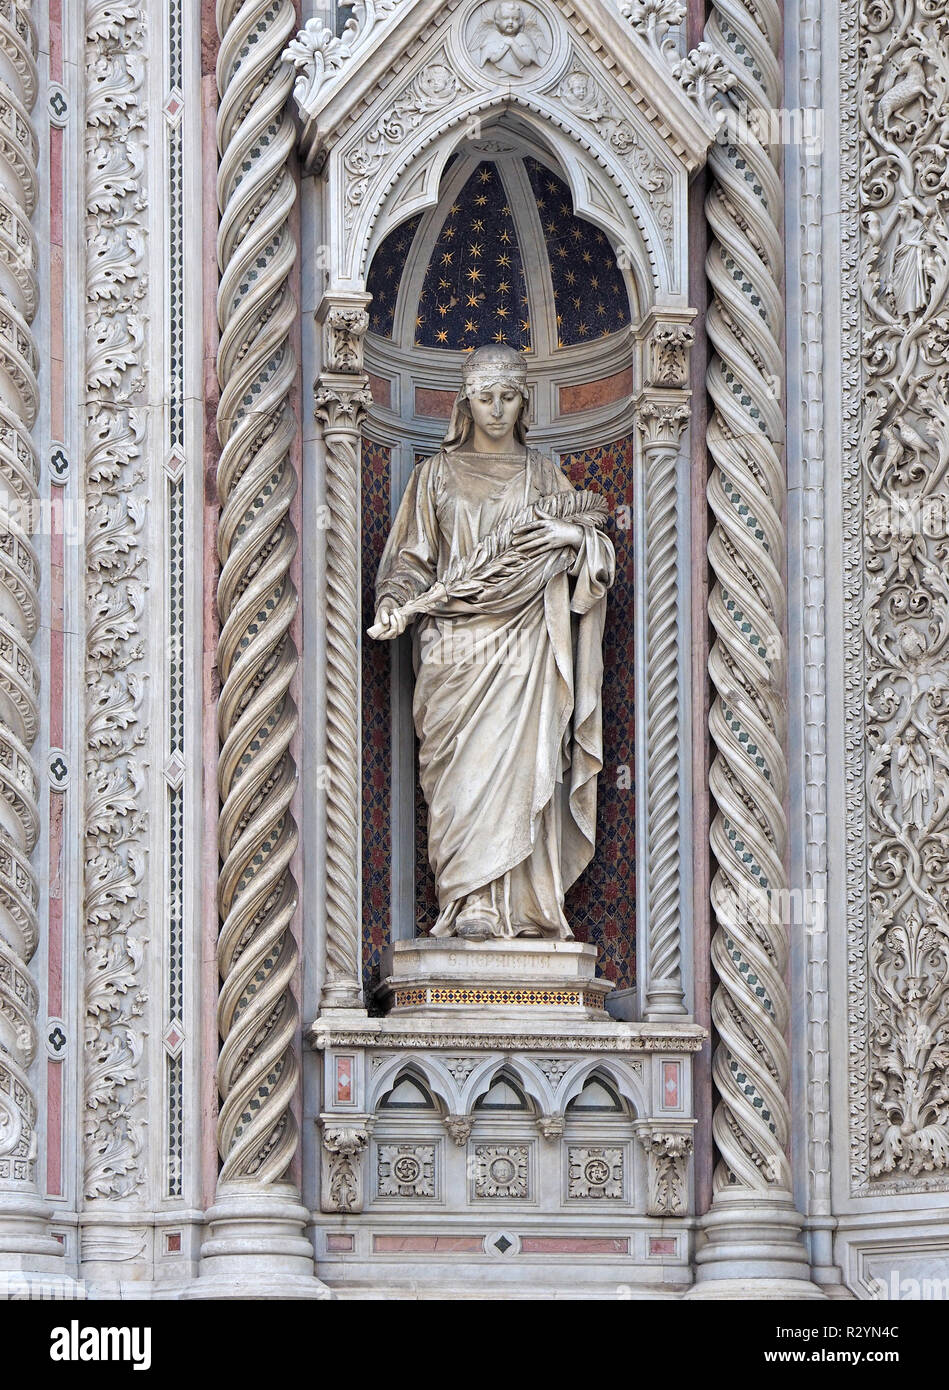 Statue de Sainte Reparata dans la façade de la cathédrale (Cattedrale di Santa Maria del Fiore) dans la Piazza del Duomo, dans le centre de Florence, Toscane, Italie Banque D'Images